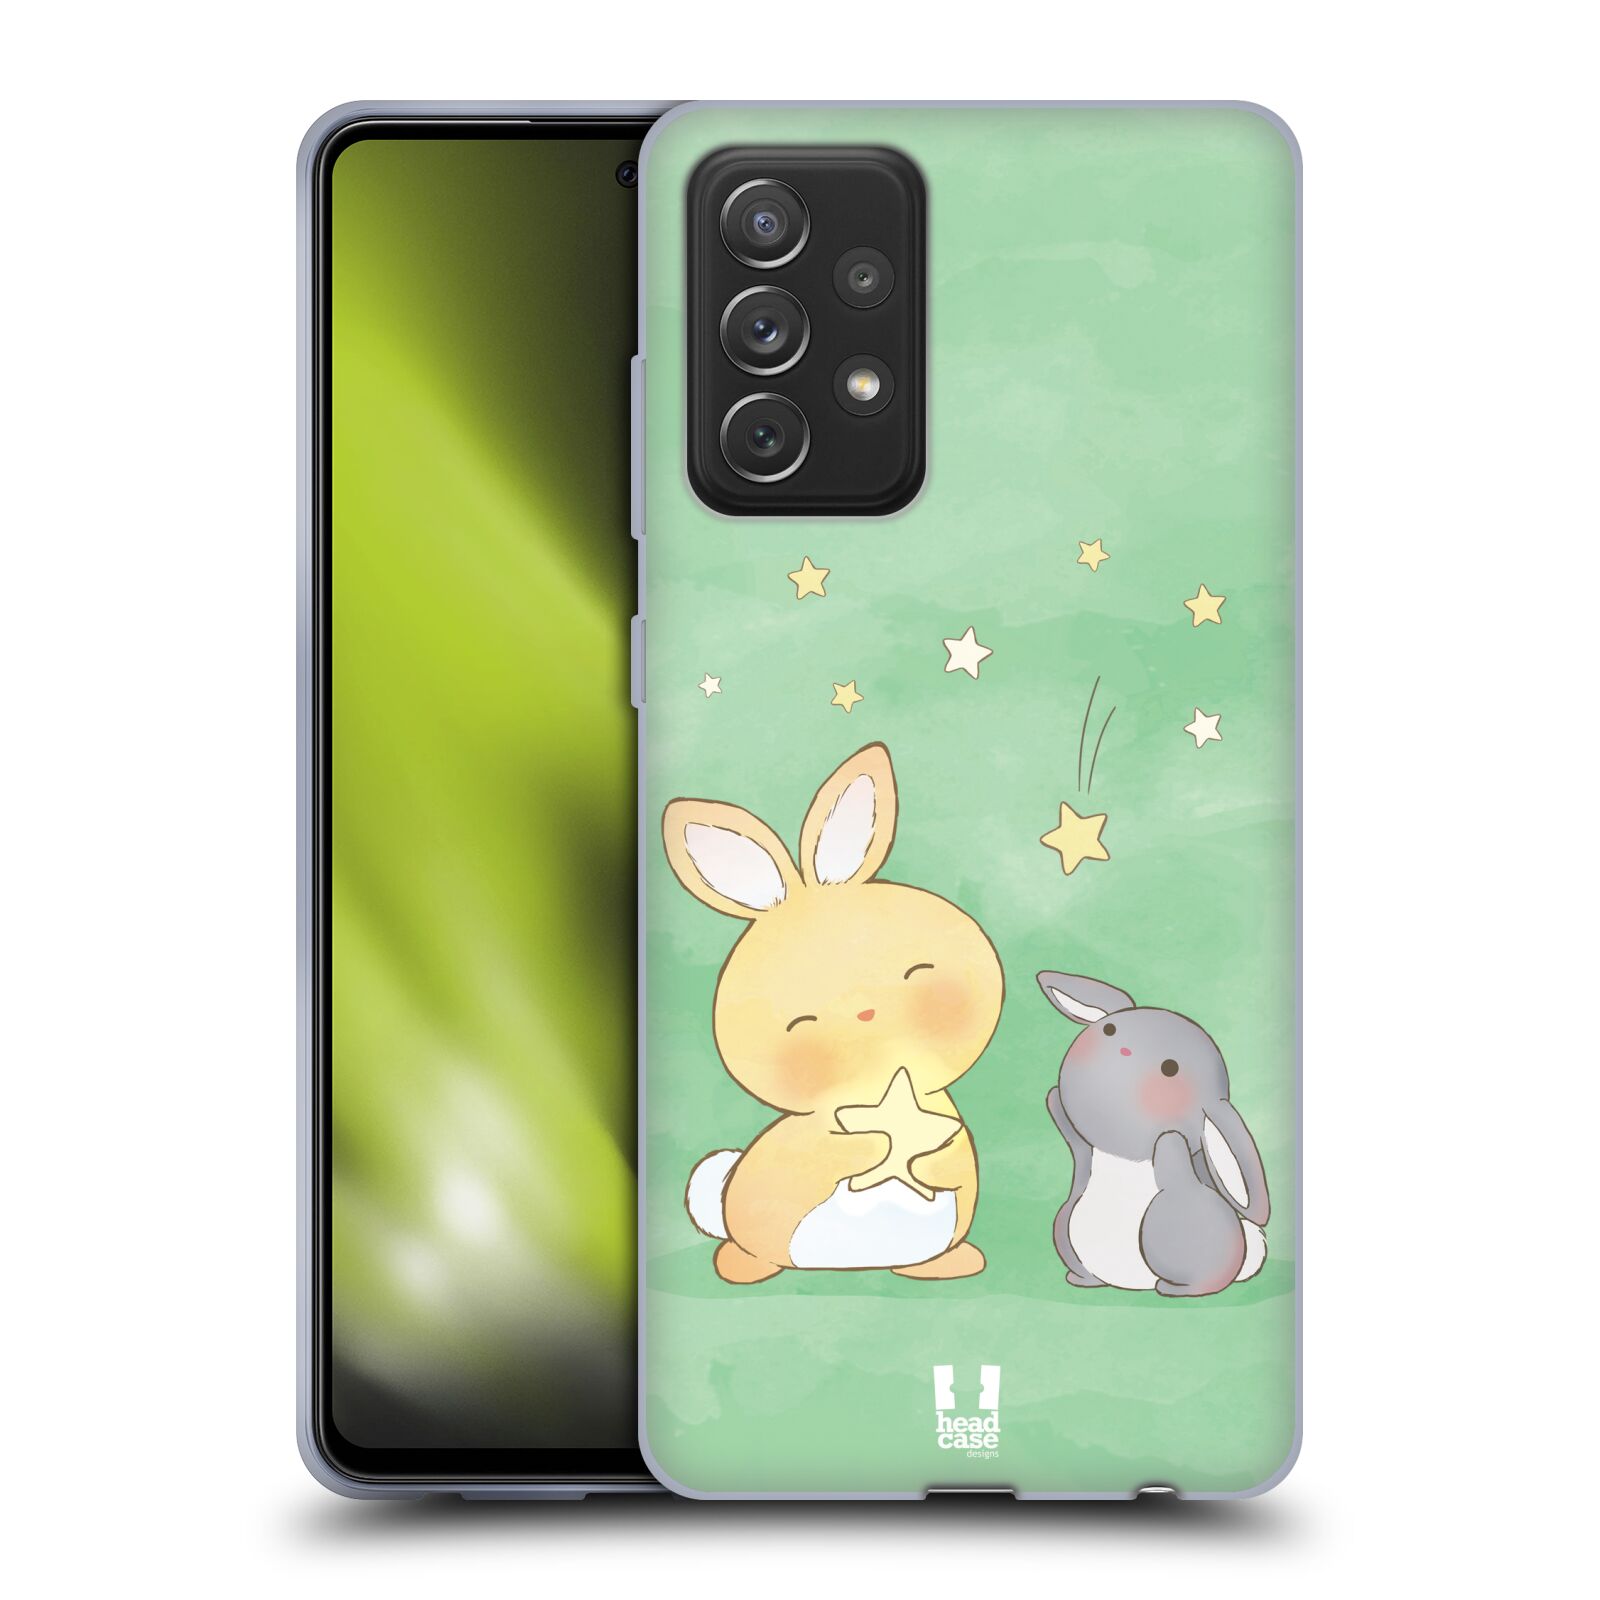 Plastový obal HEAD CASE na mobil Samsung Galaxy A72 / A72 5G vzor králíček a hvězdy zelená